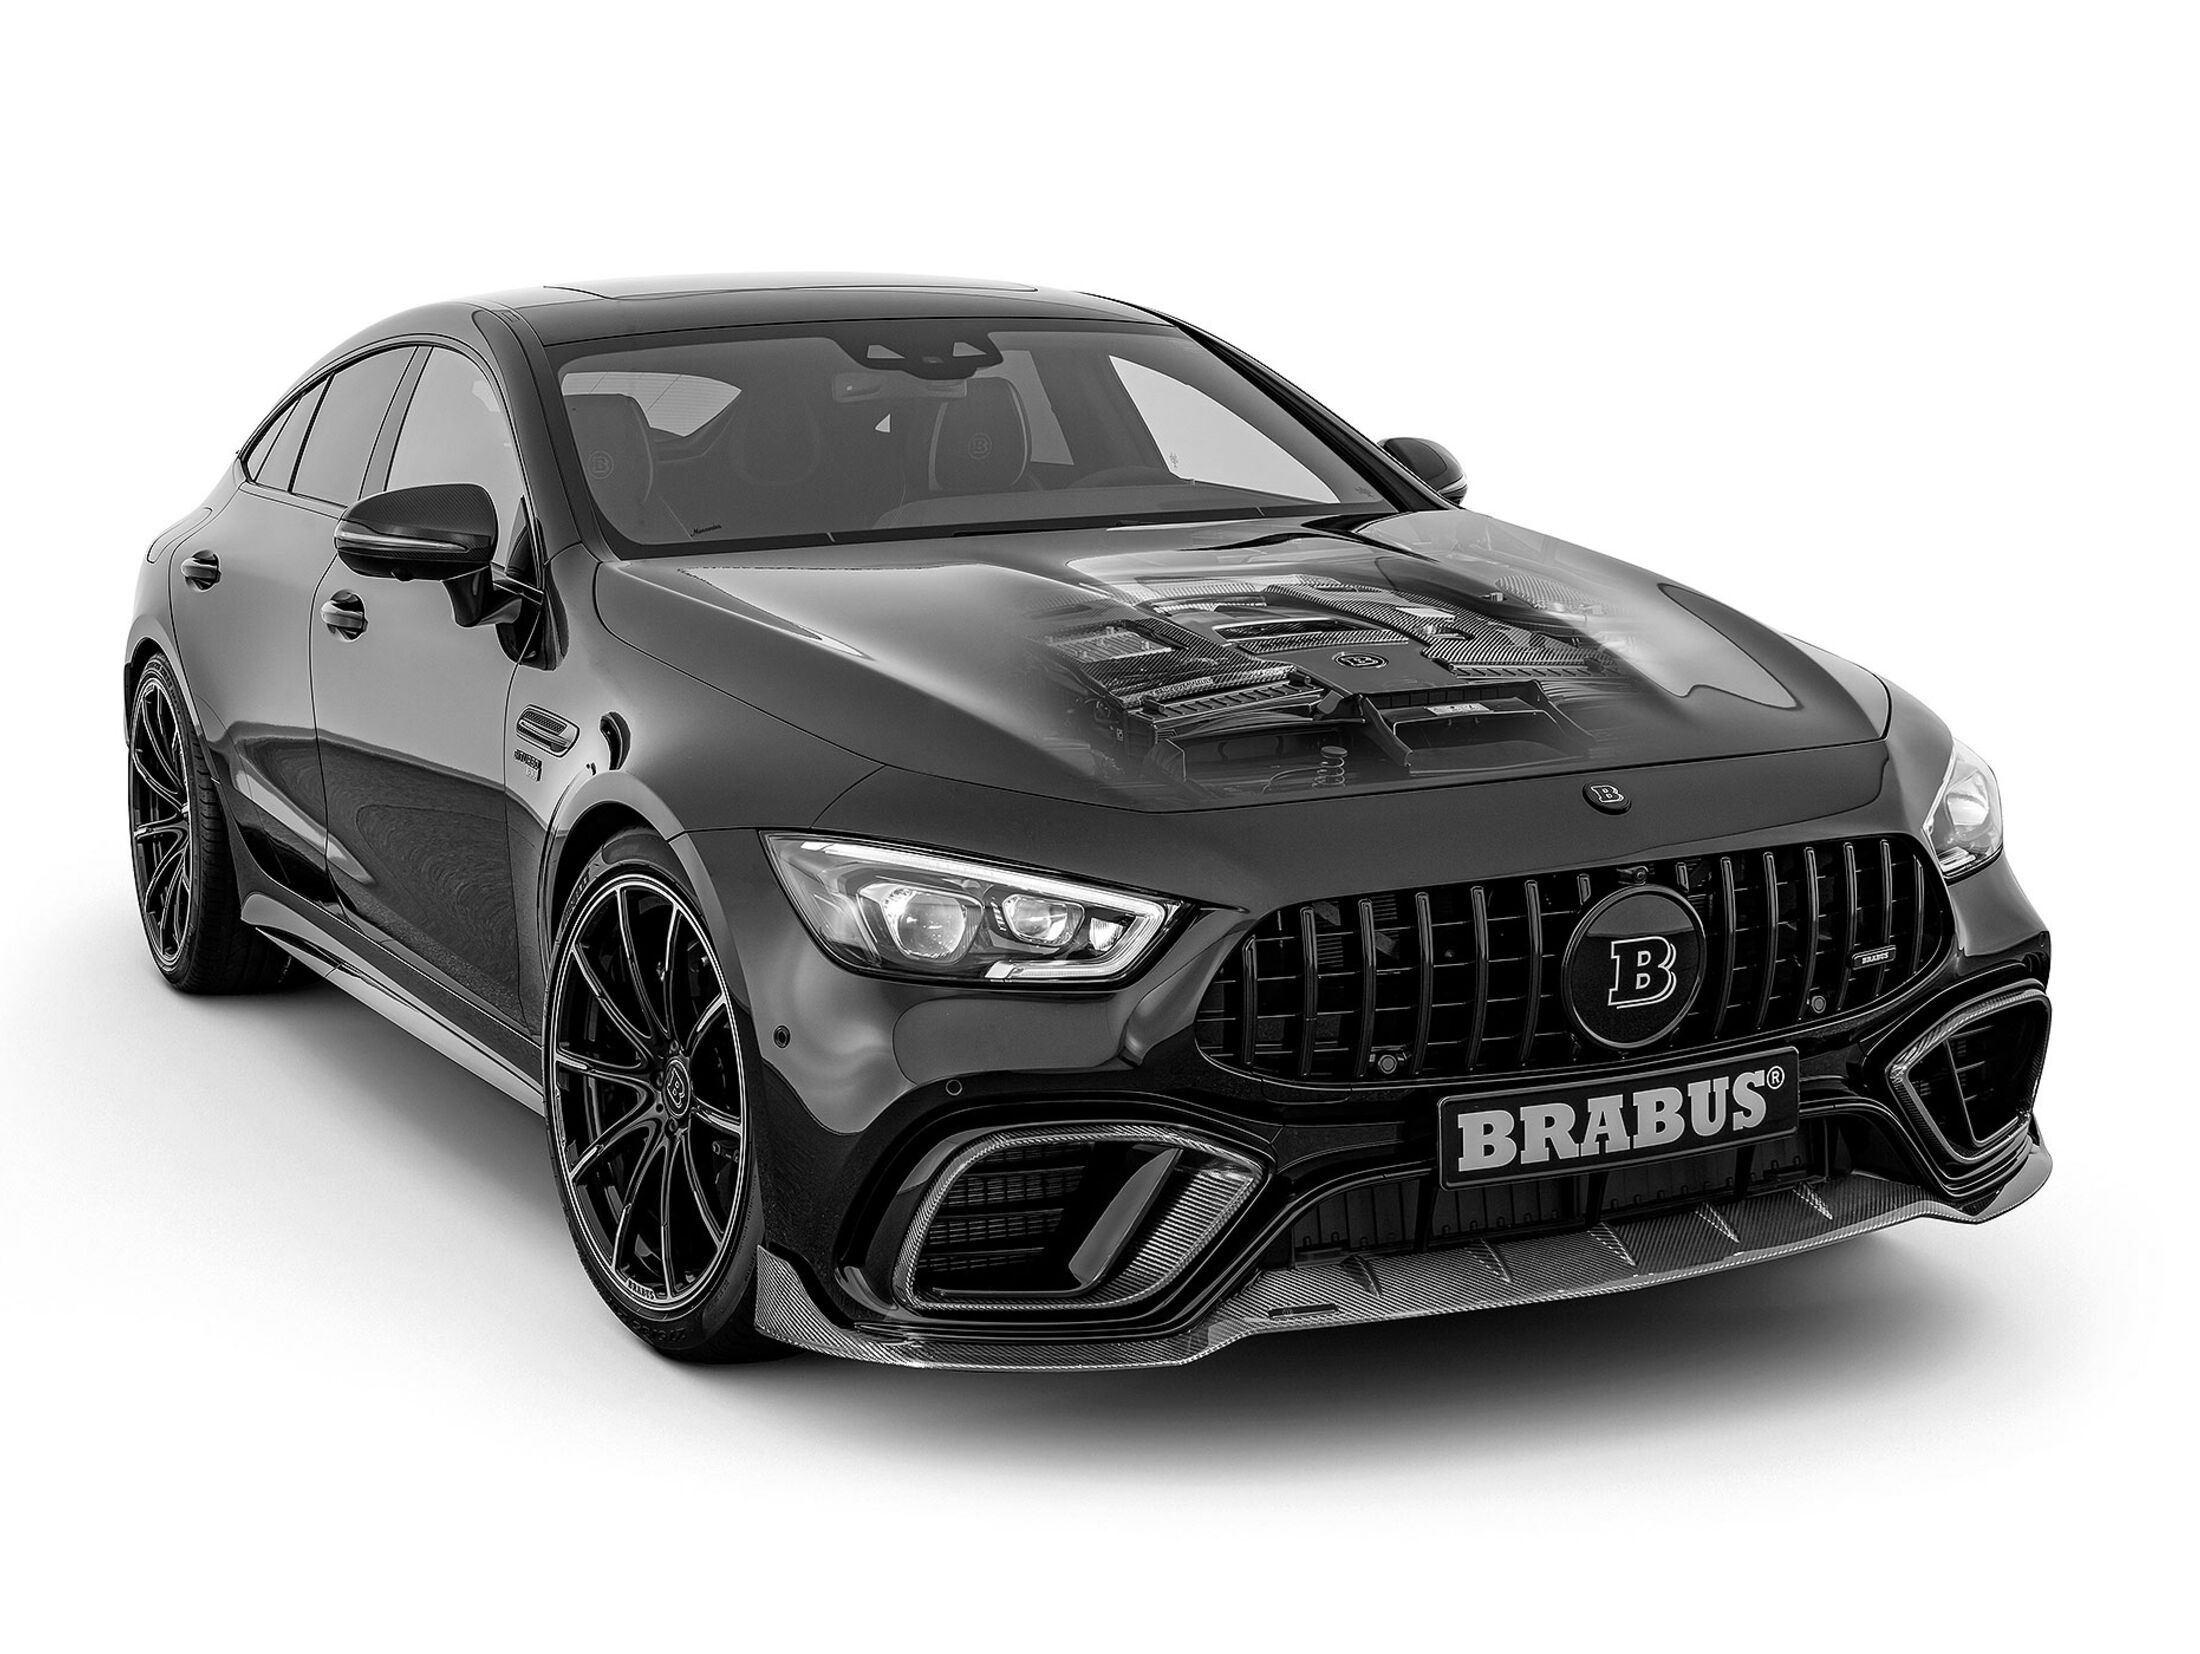 https://imgr1.auto-motor-und-sport.de/BRABUS-800-auf-Basis-Mercedes-GT-63-S-4MATIC--jsonLd4x3-fb7bffe5-1593059.jpg